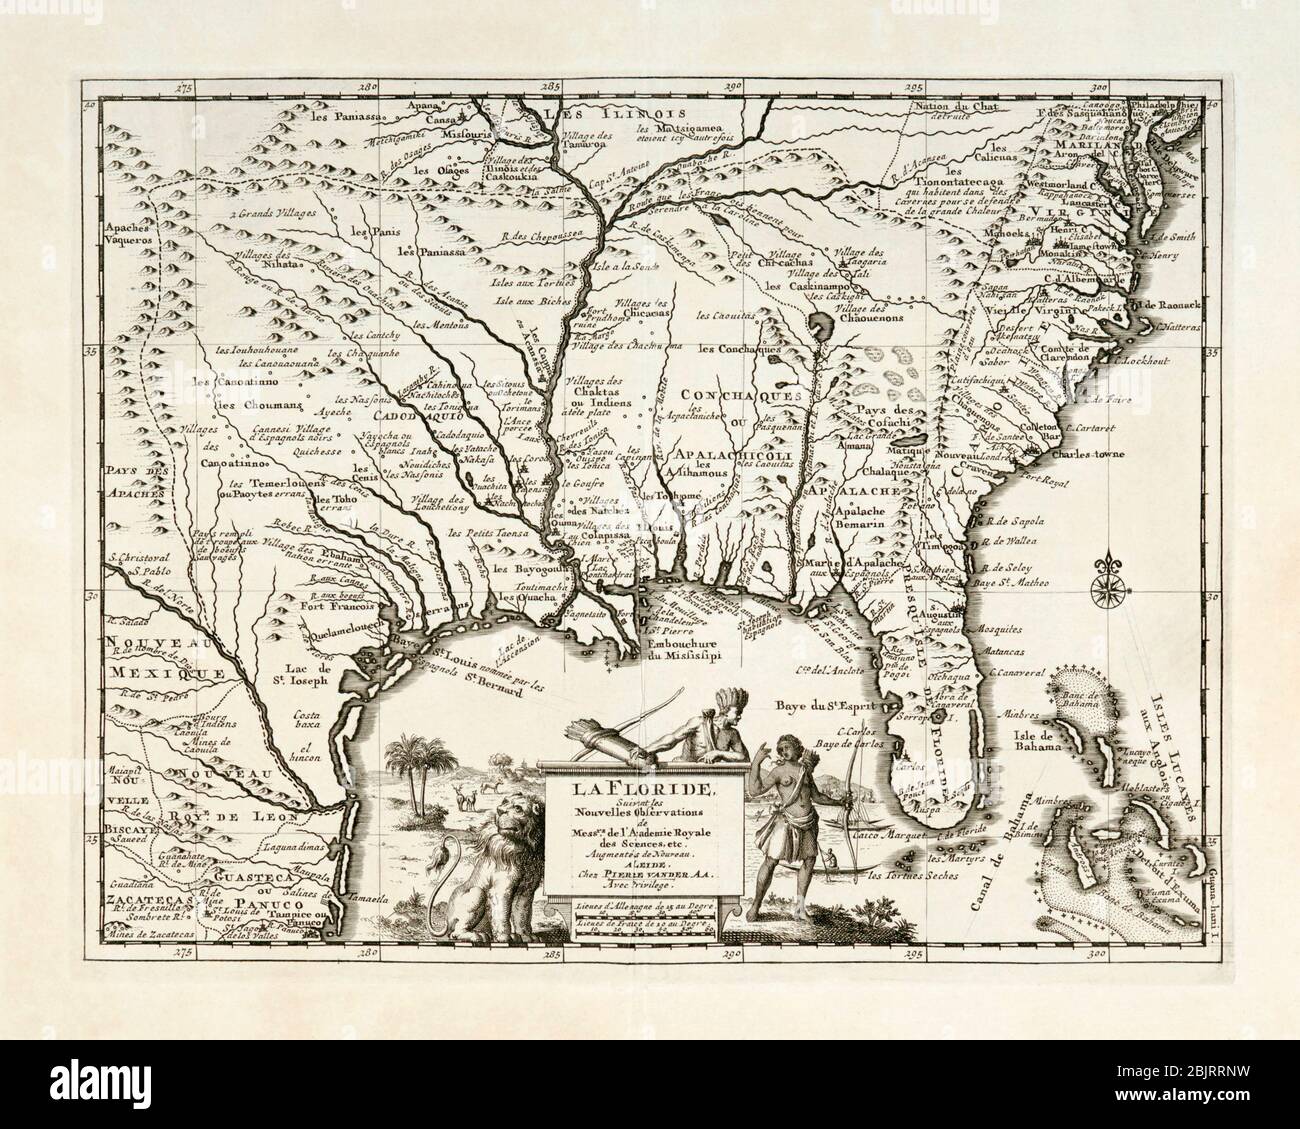 La Floride. Carte de l'Amérique du Nord du sud-est, y compris la Floride, montrant les villages amérindiens et les colonies françaises, espagnoles et anglaises. Publié par Pieter van der AA, Leiden, vers 1713. Banque D'Images